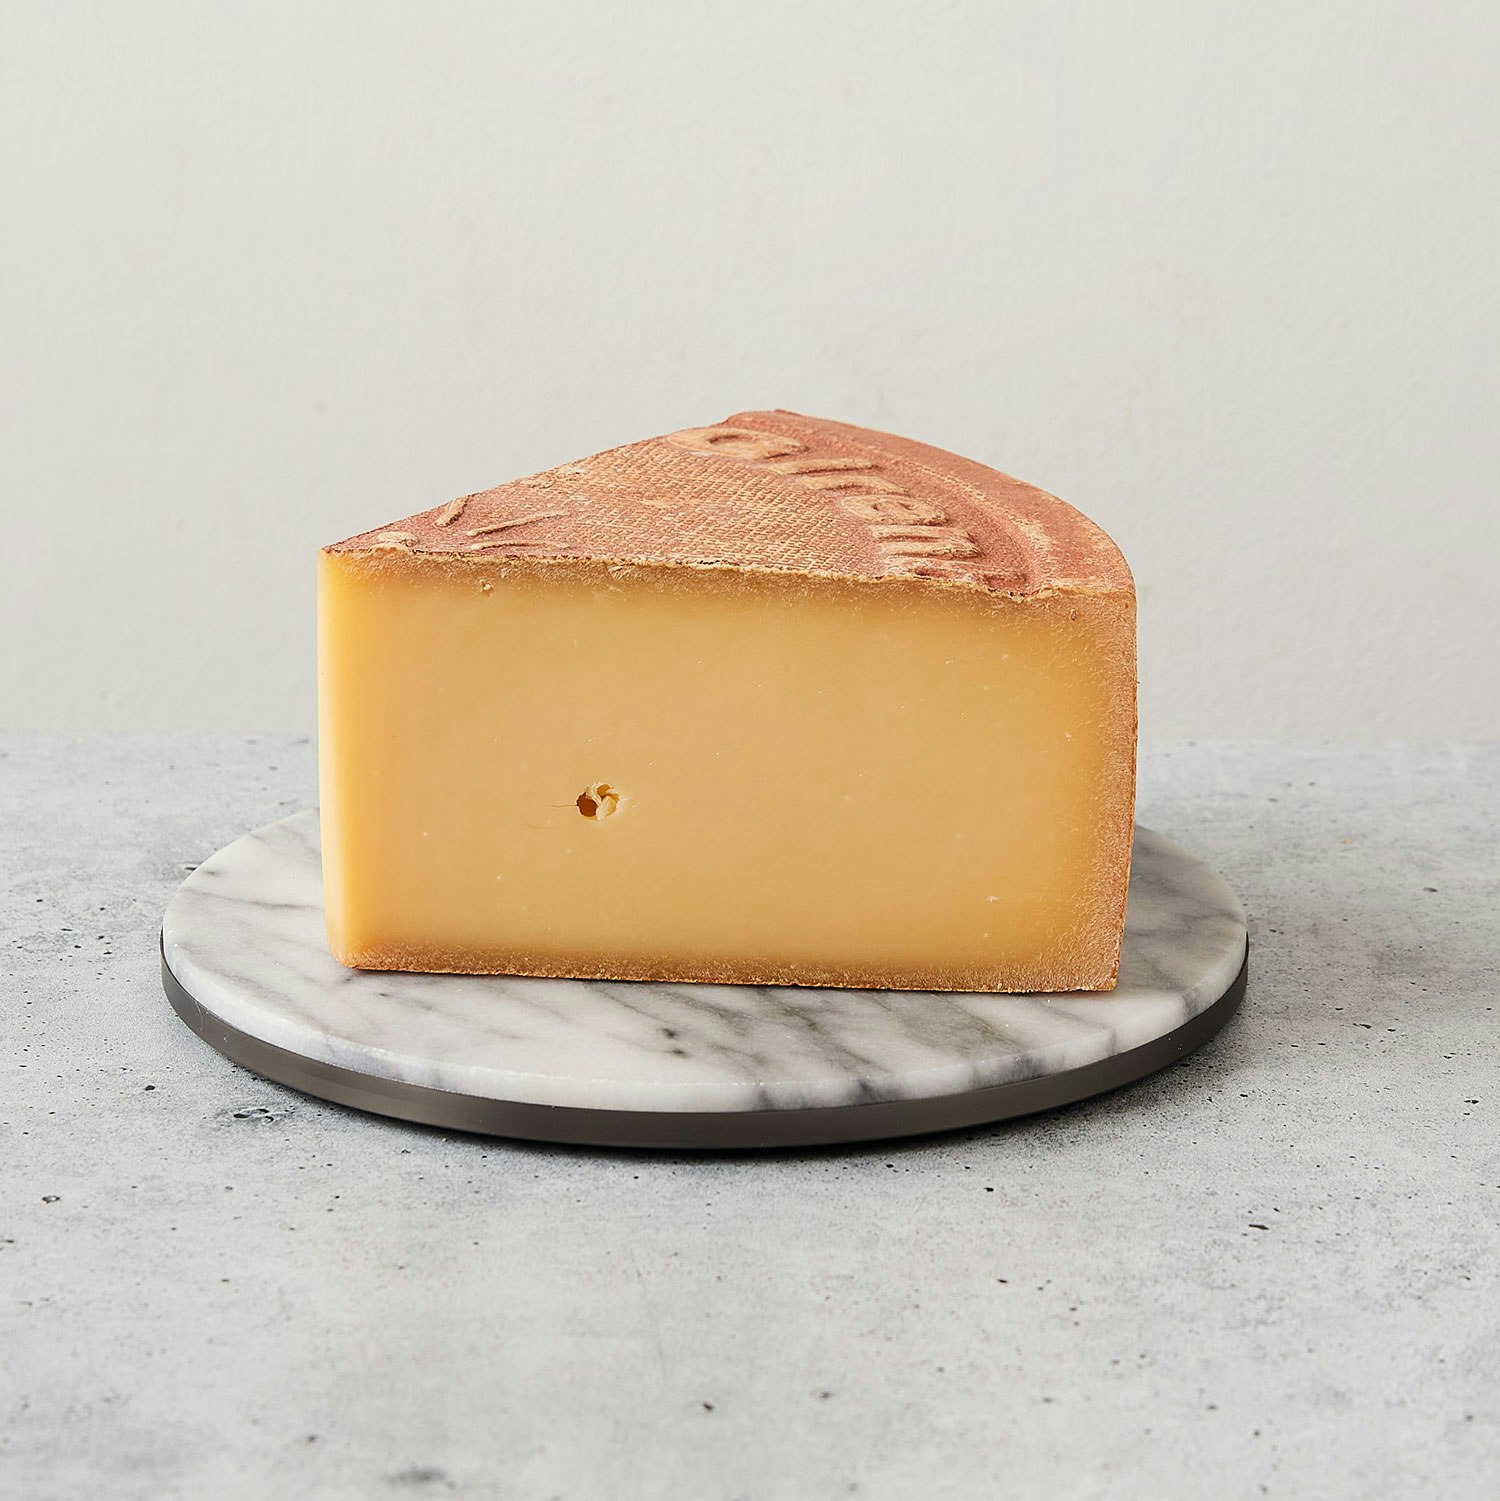 Ur Eiche cheese